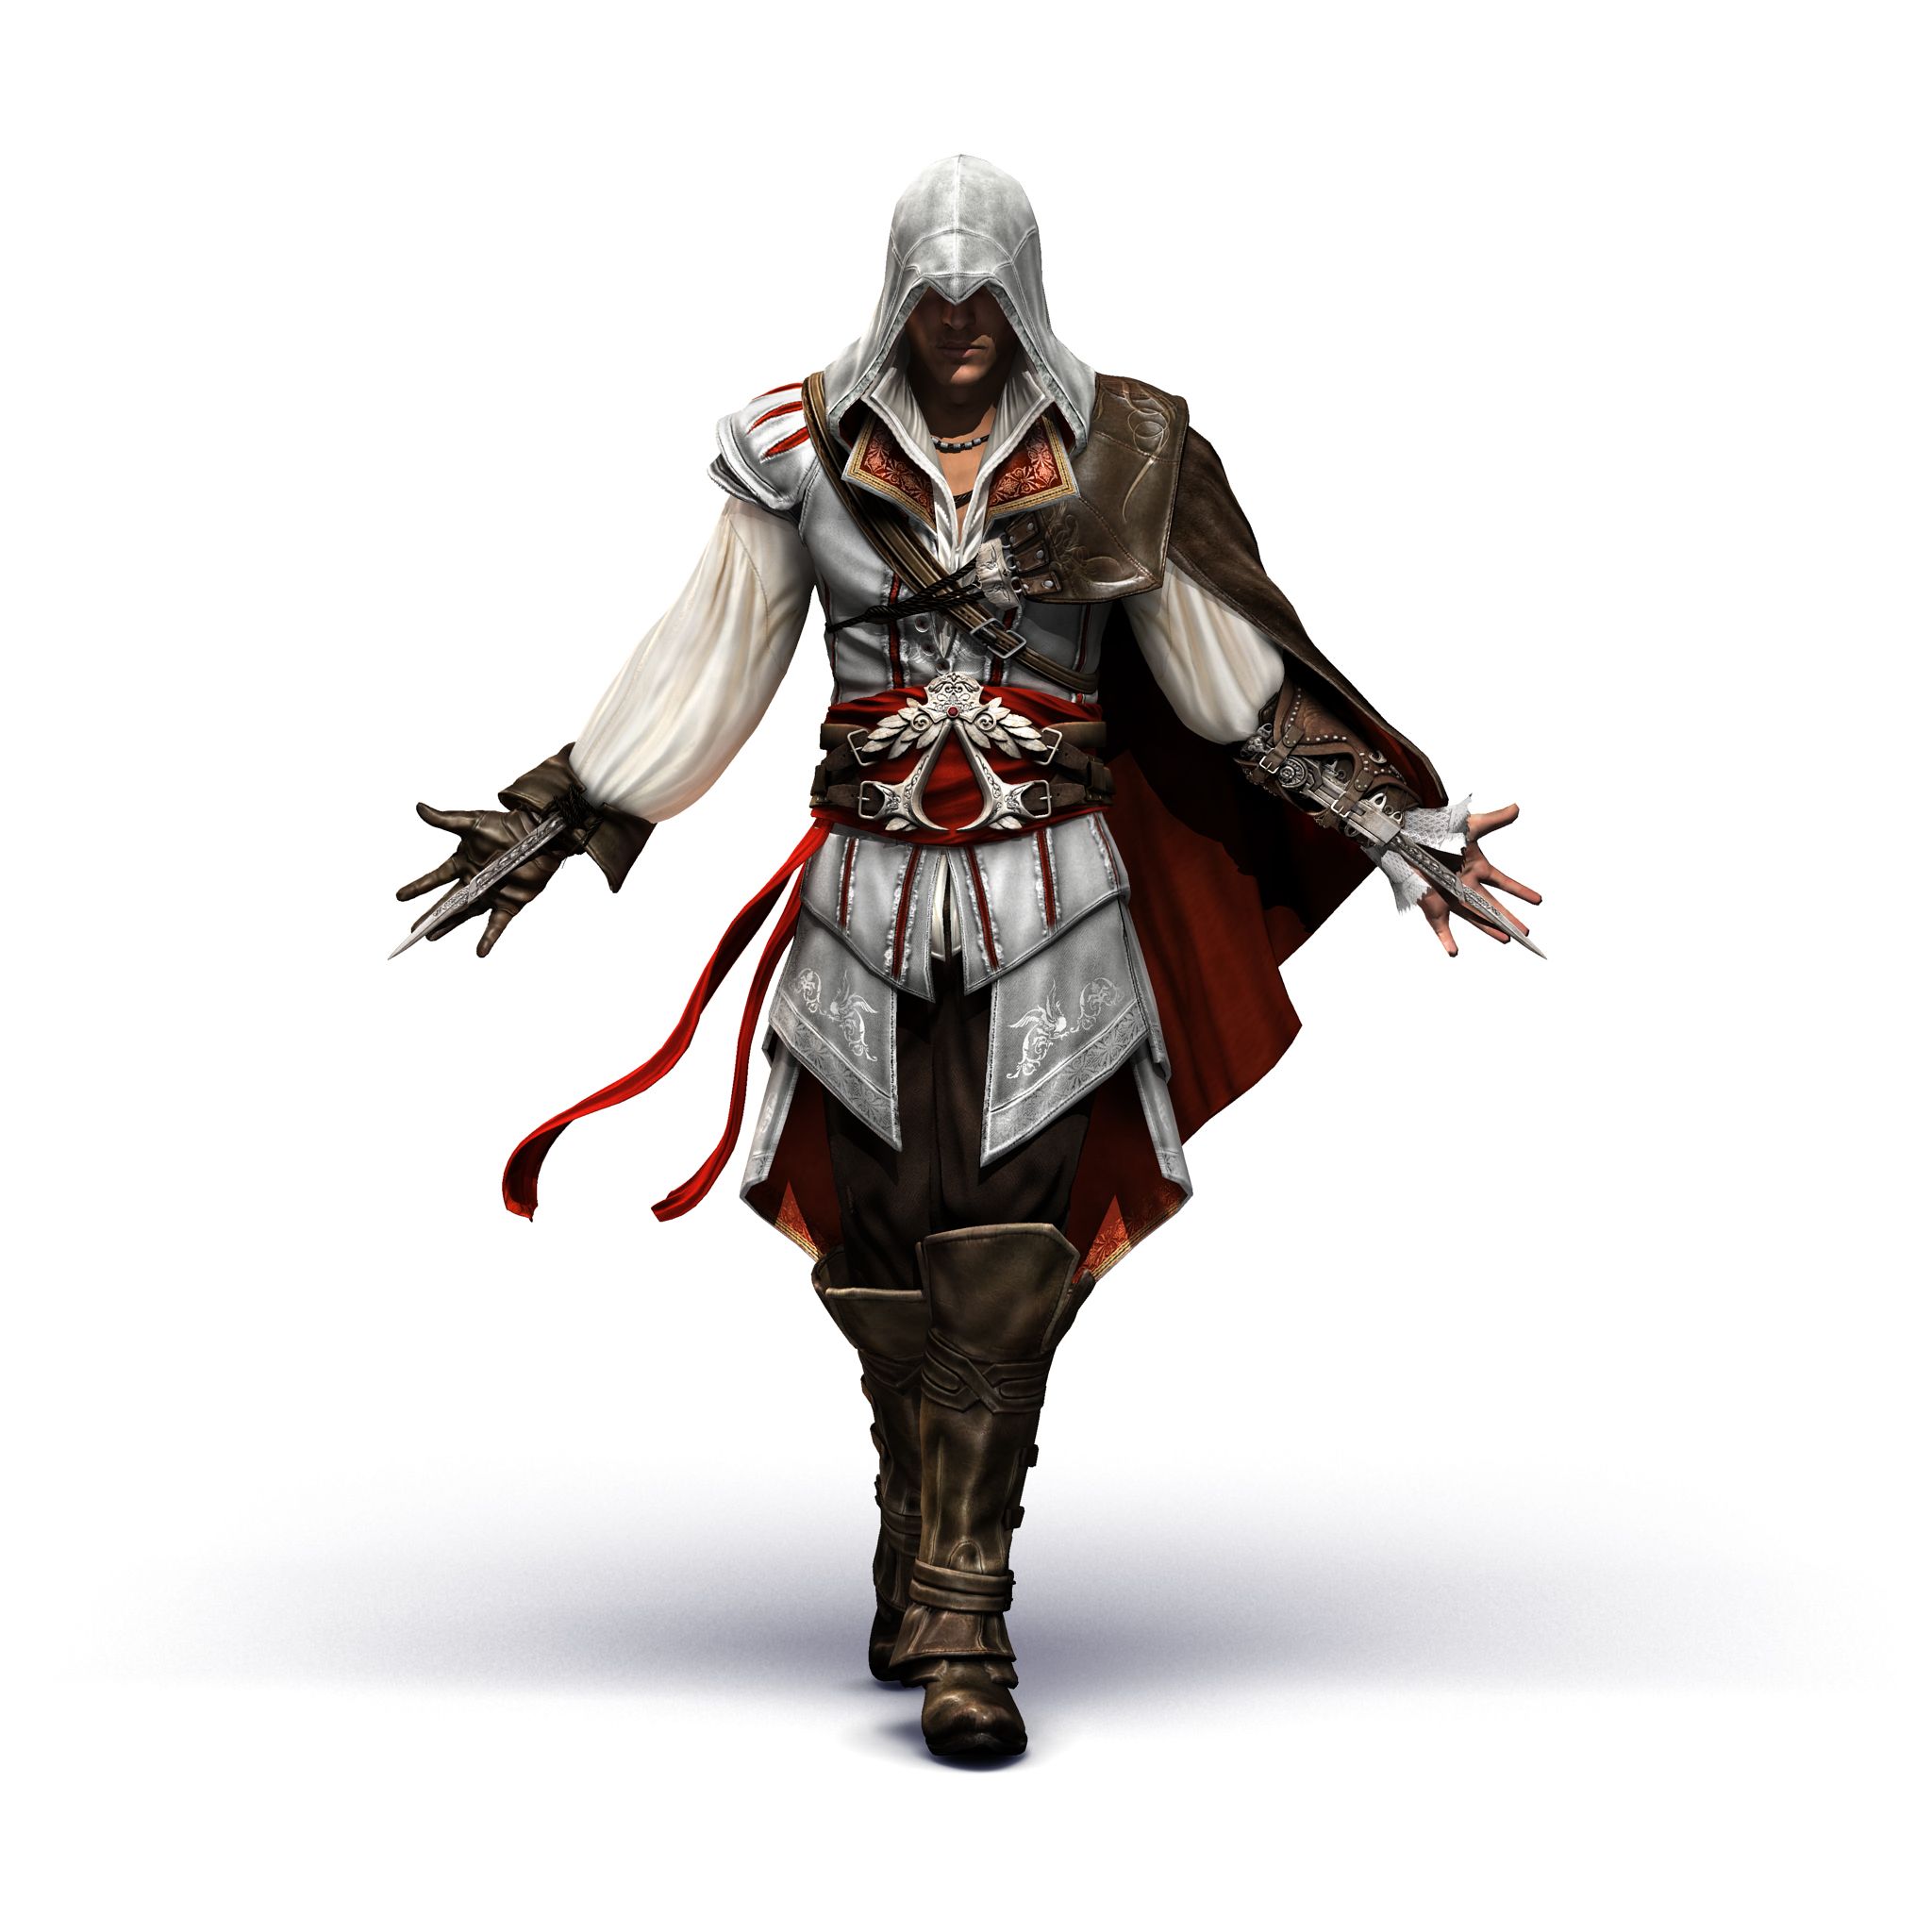 Assassin's Creed: Эцио Аудиторе. Коллекция, кадр № 2